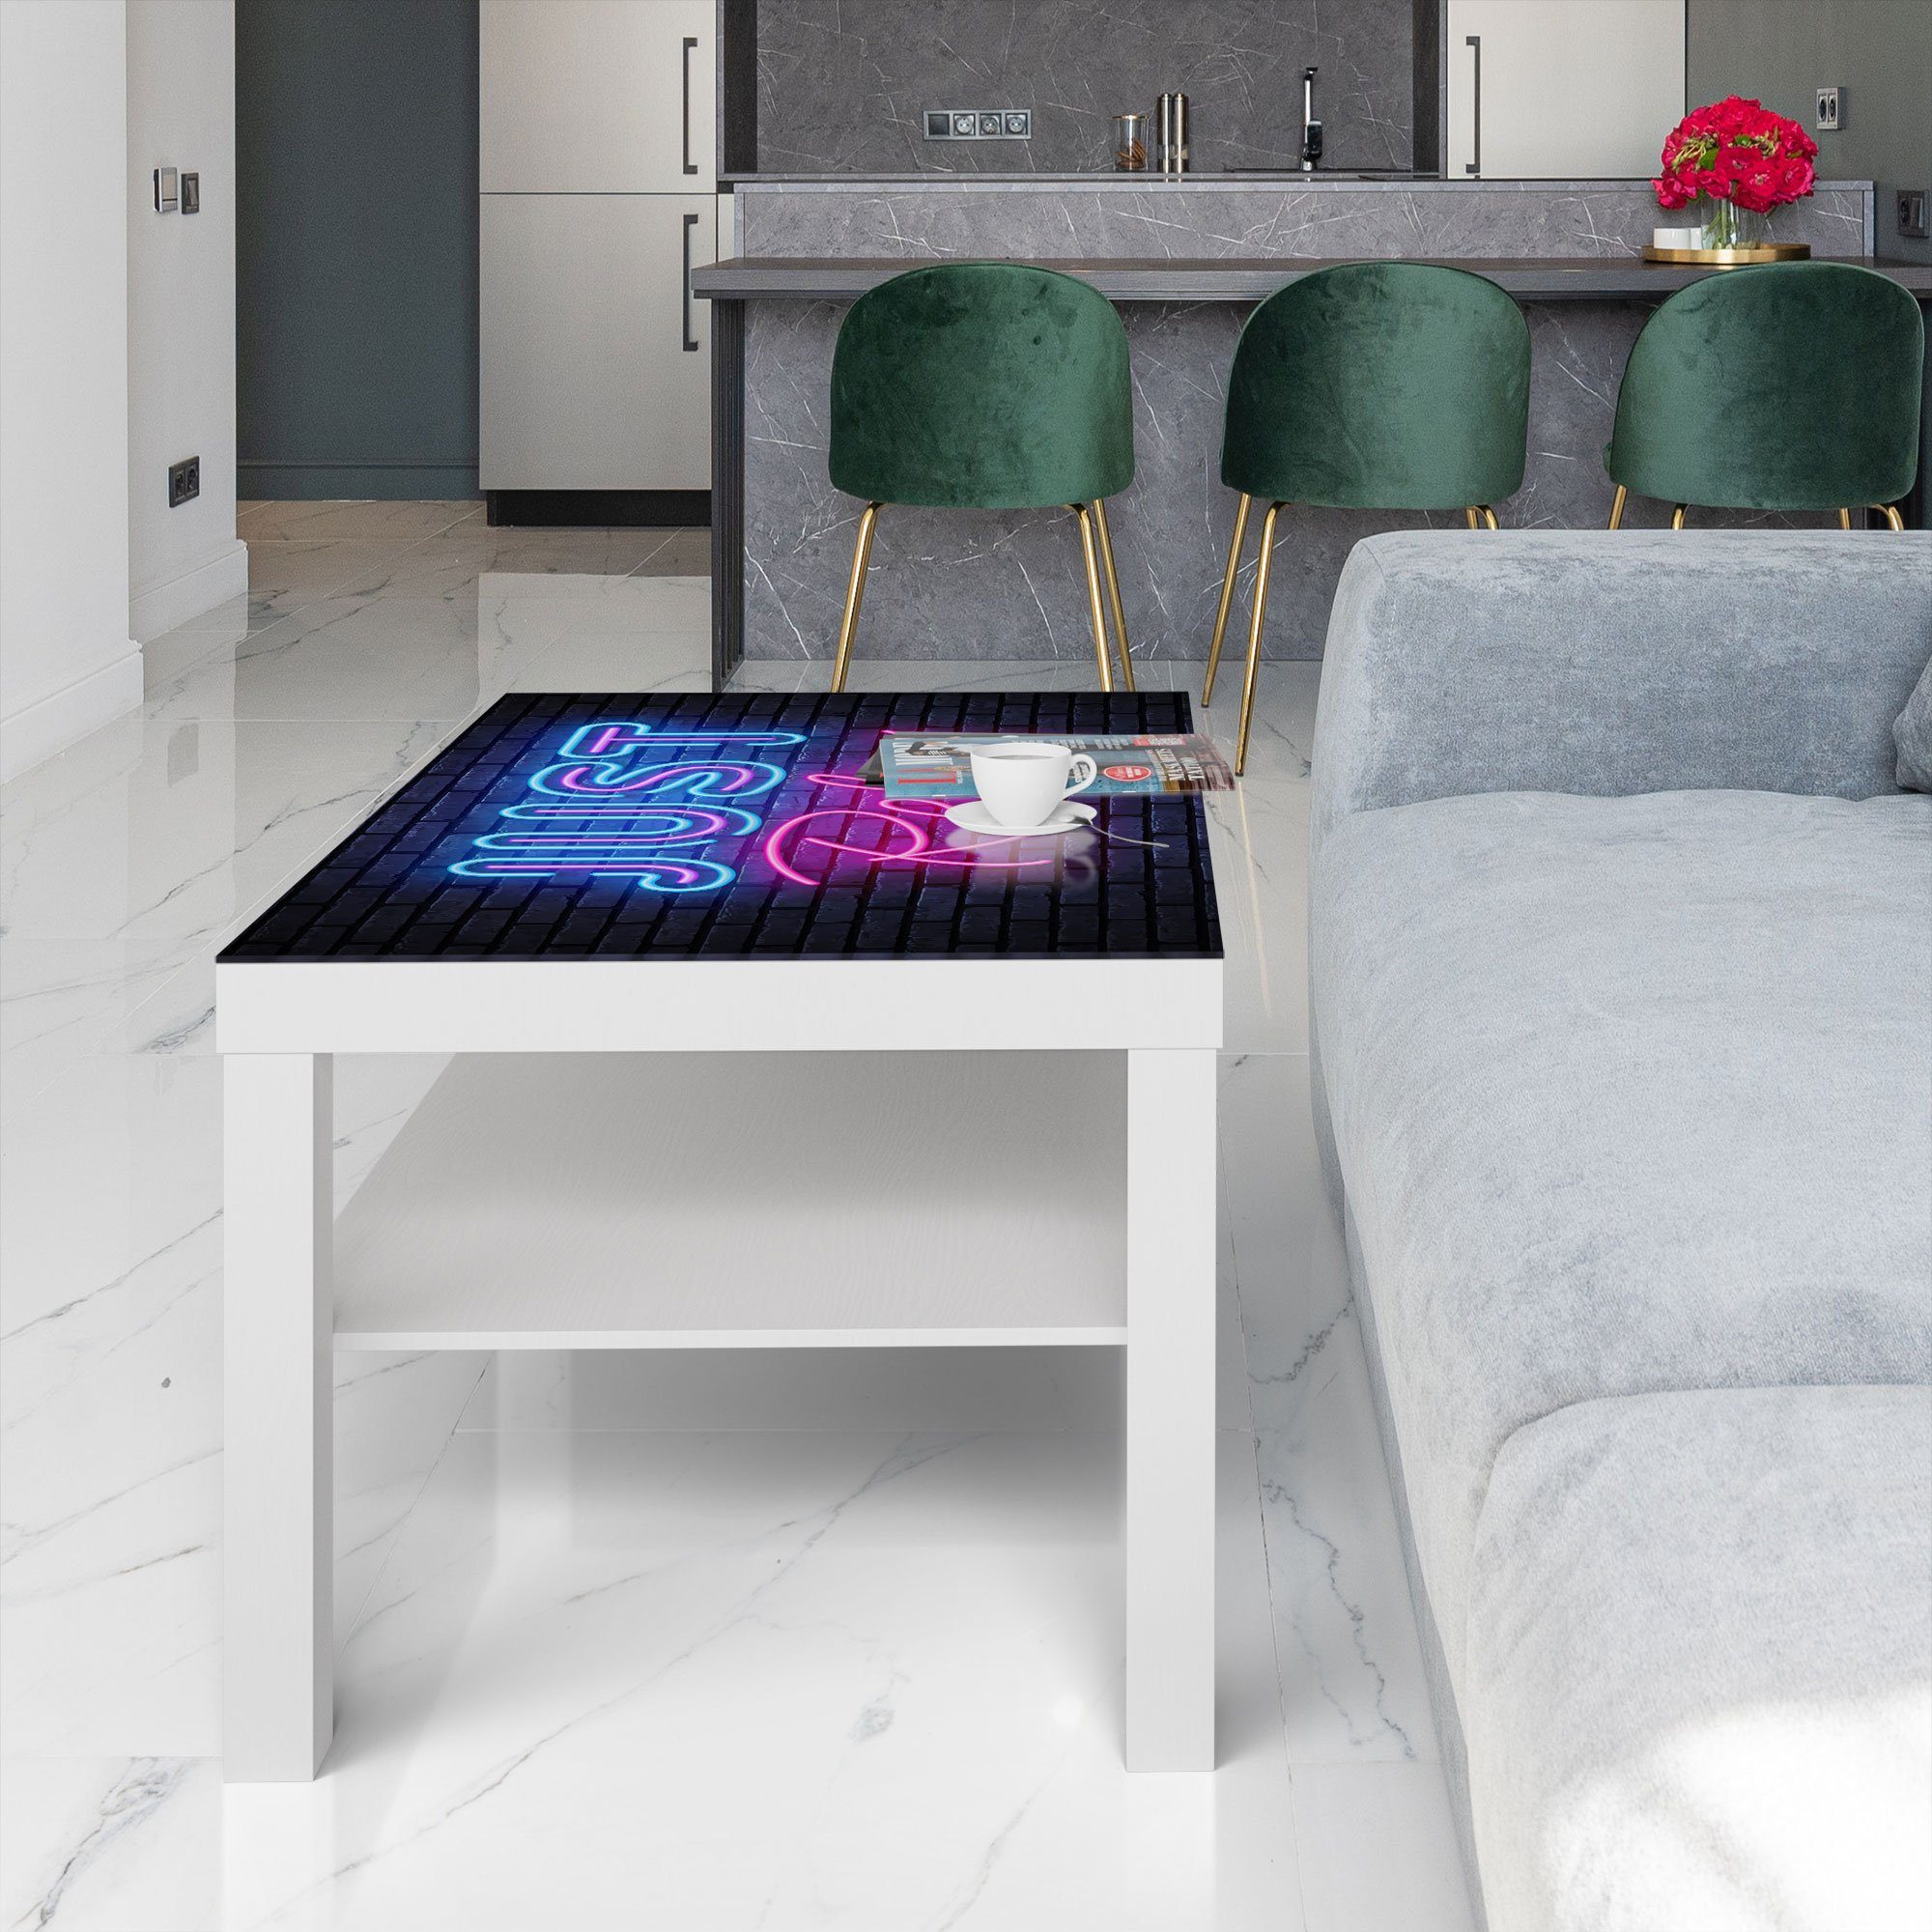 Glas DEQORI Neon-Design', modern Beistelltisch 'Spruch Weiß Glastisch im Couchtisch